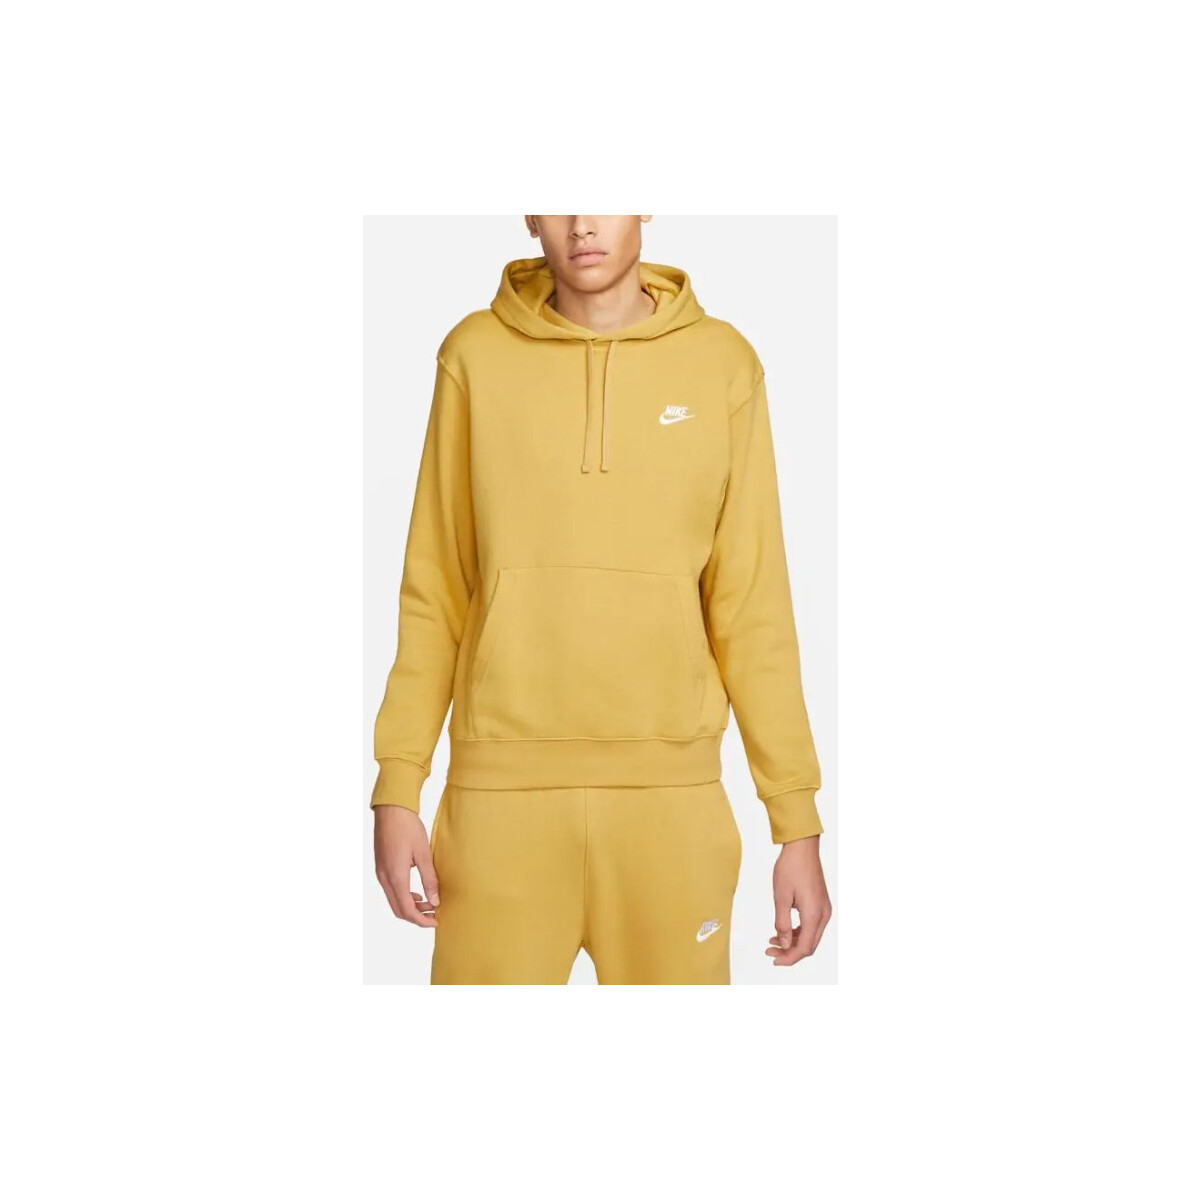 Vêtements Homme Sweats Nike - Sweat à capuche - jaune Jaune